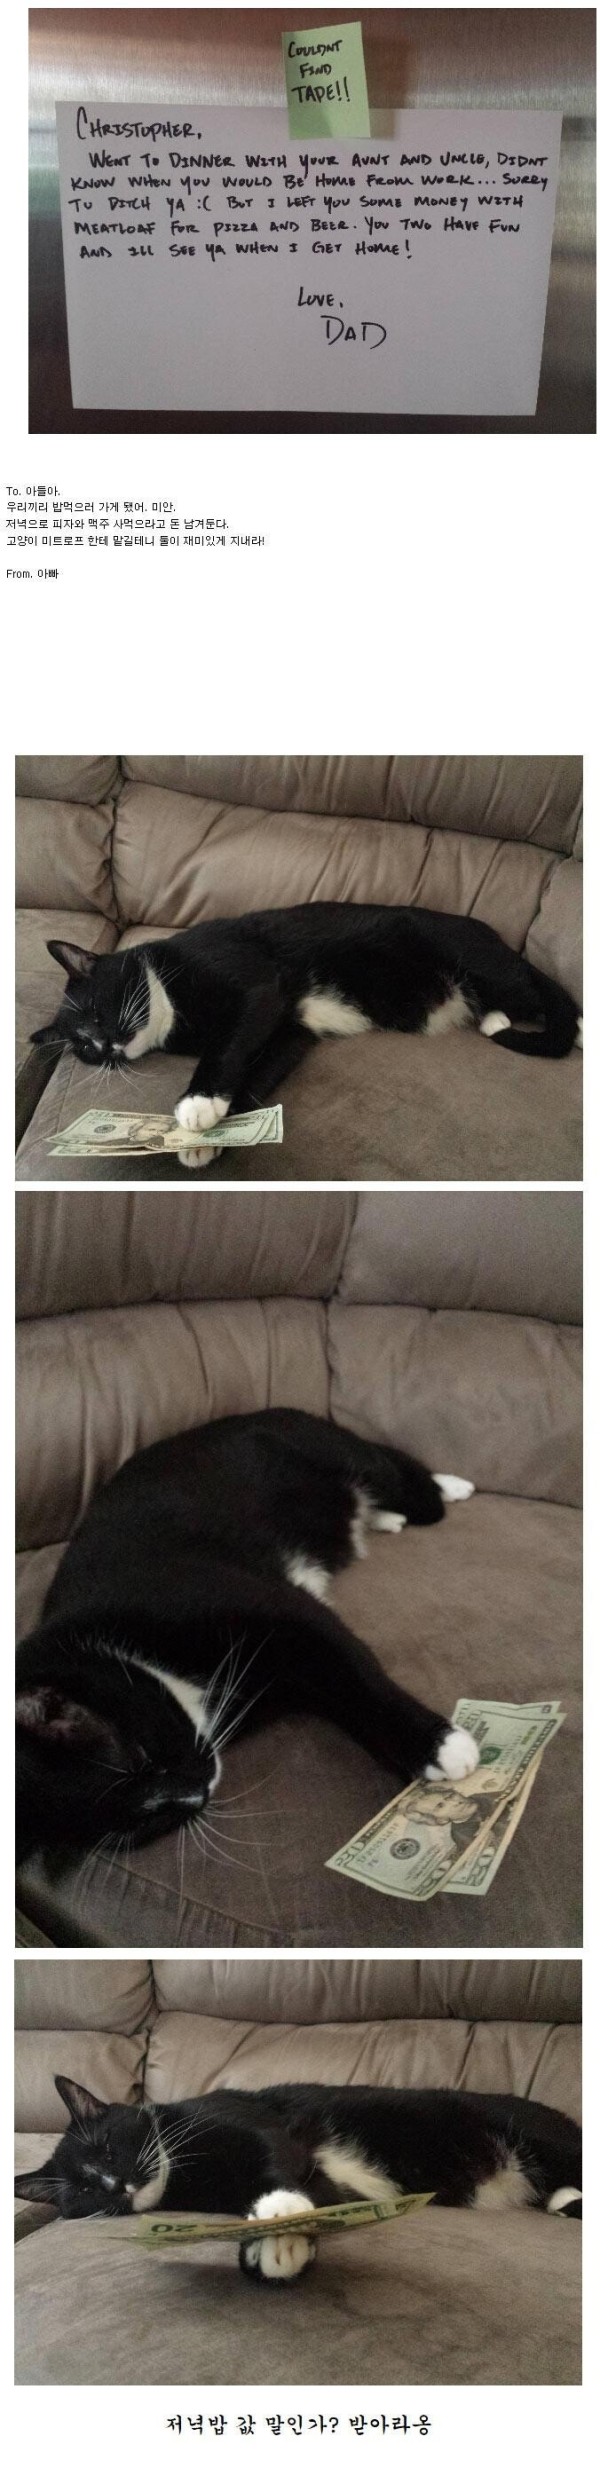 고양이에게 돈을 맡긴 아버지